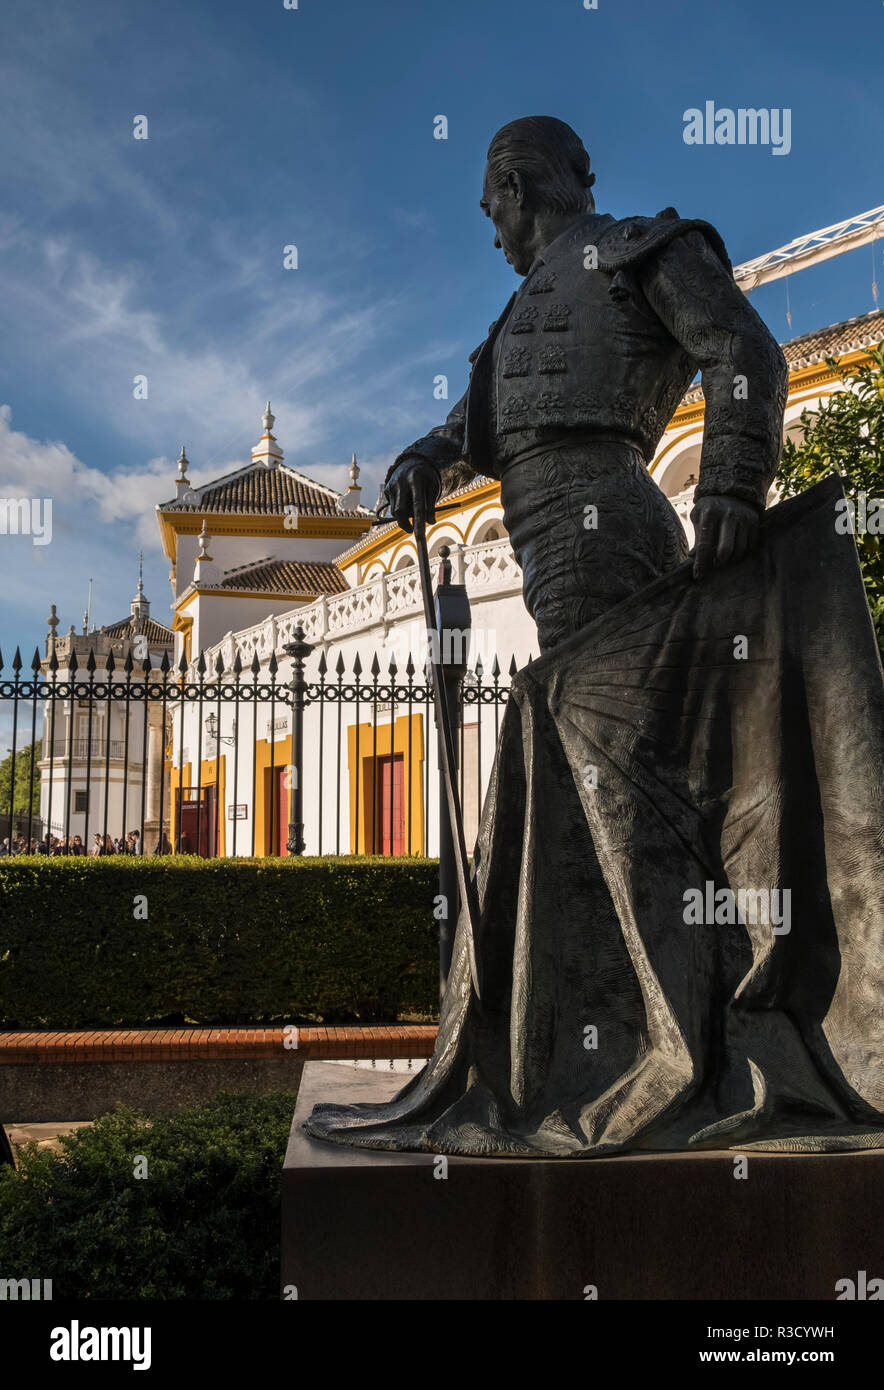 La scultura in bronzo di Francisco Romero López, noto come Curro Romero, al di fuori di Plaza de Toros de la Real Maestranza bullring, Siviglia, in Andalusia, Spagna. Foto Stock